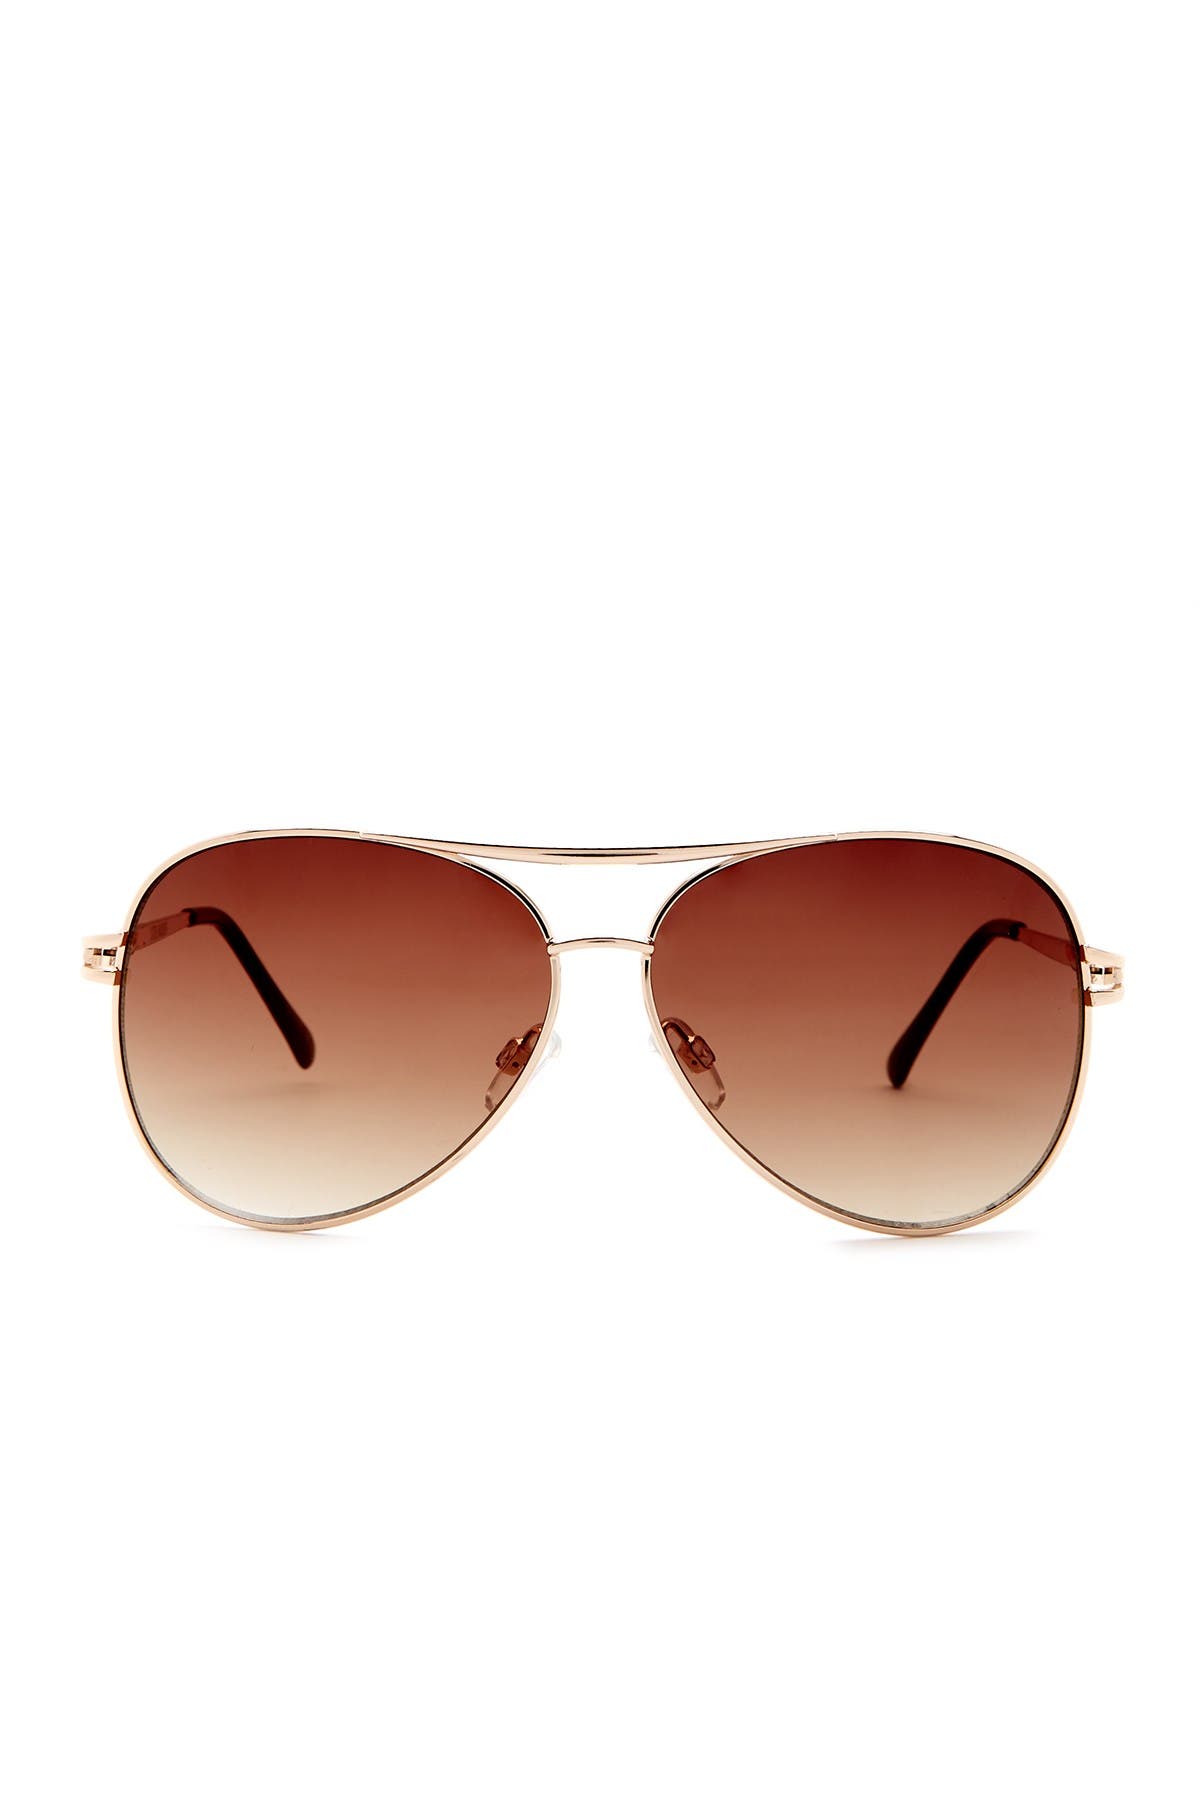 steve madden women's aviator sunglasses